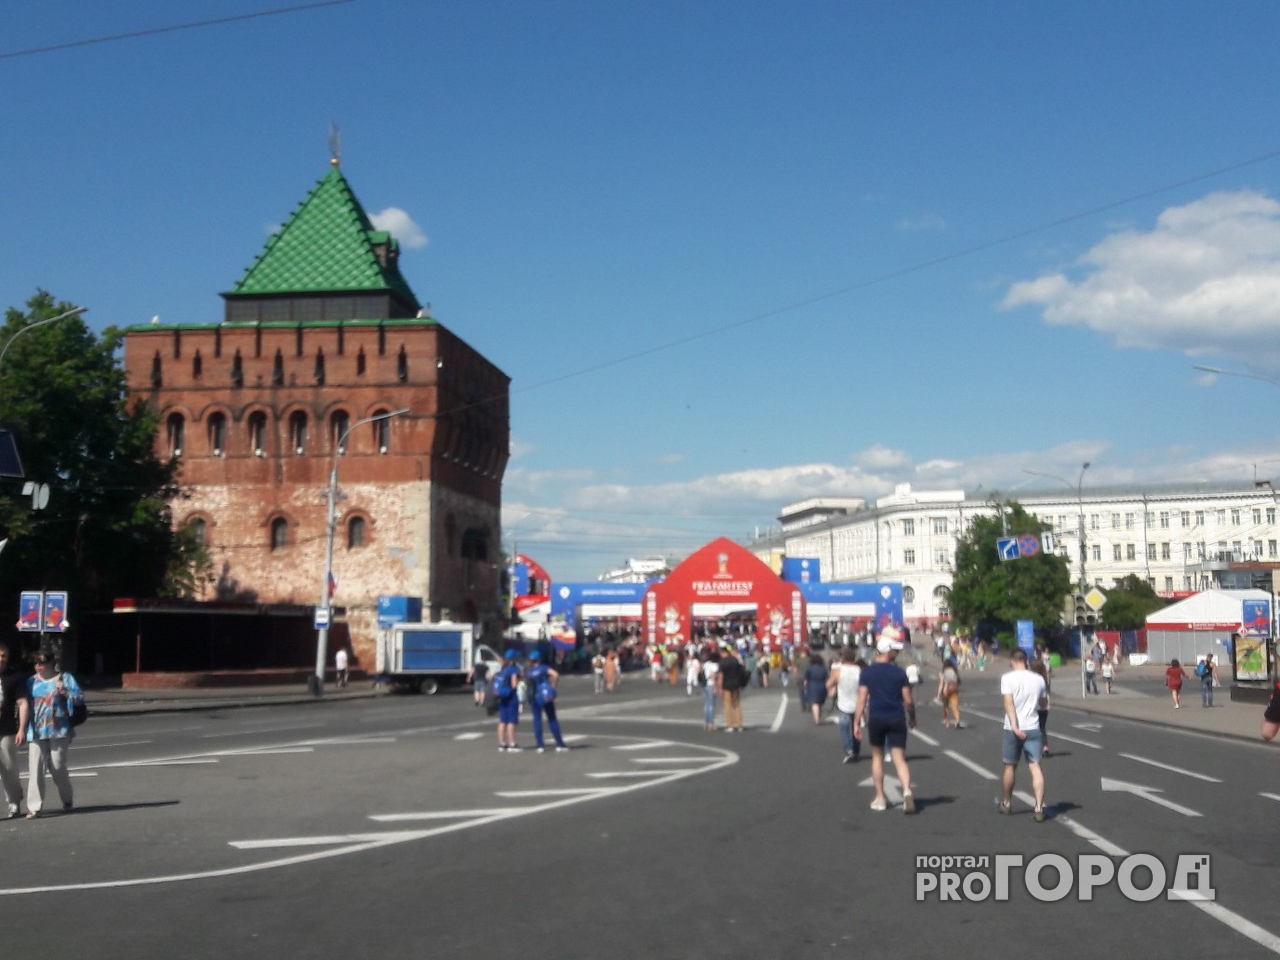 DJ Gru выступит на фестивале болельщиков в Нижнем Новгороде 3 июля